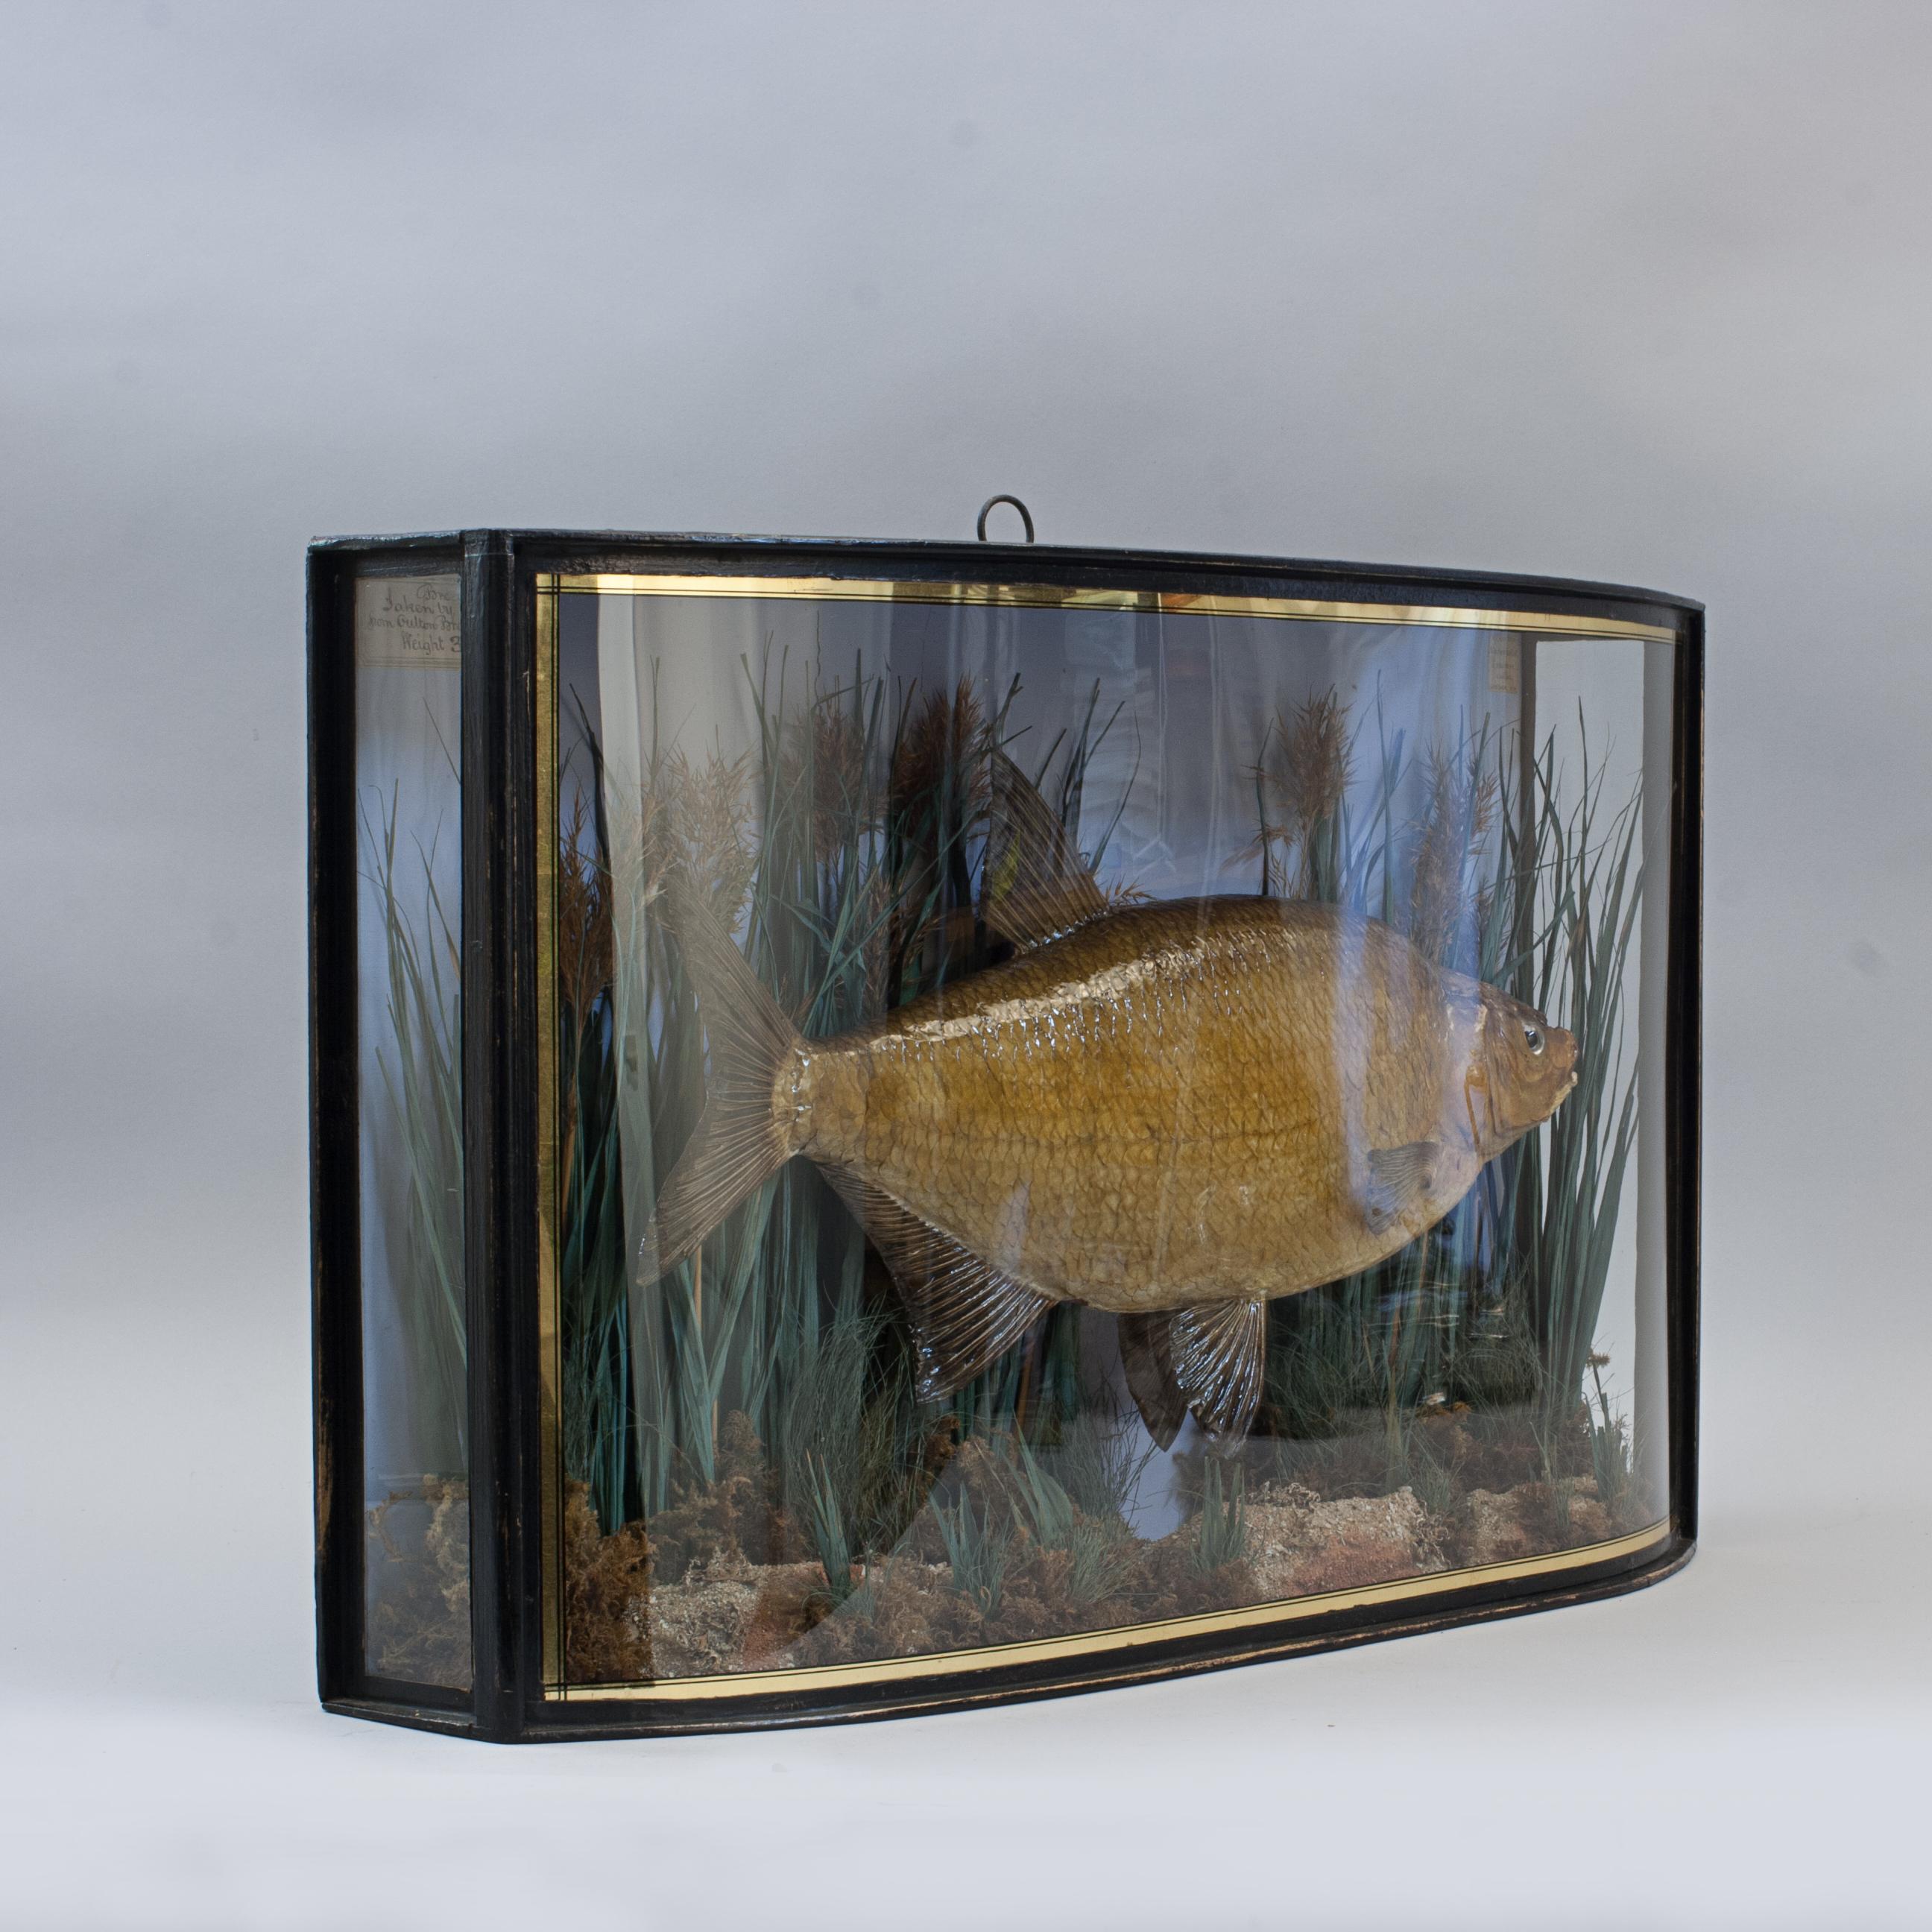 Taxidermie, poissons conservés, daurade en caisson.
Un daurade en coffret de Frederick William Anstiss (1864 - 1936) dans un joli coffret avec des lignes dorées. L'étui contient une daurade astucieusement modélisée sur une toile de fond peinte avec